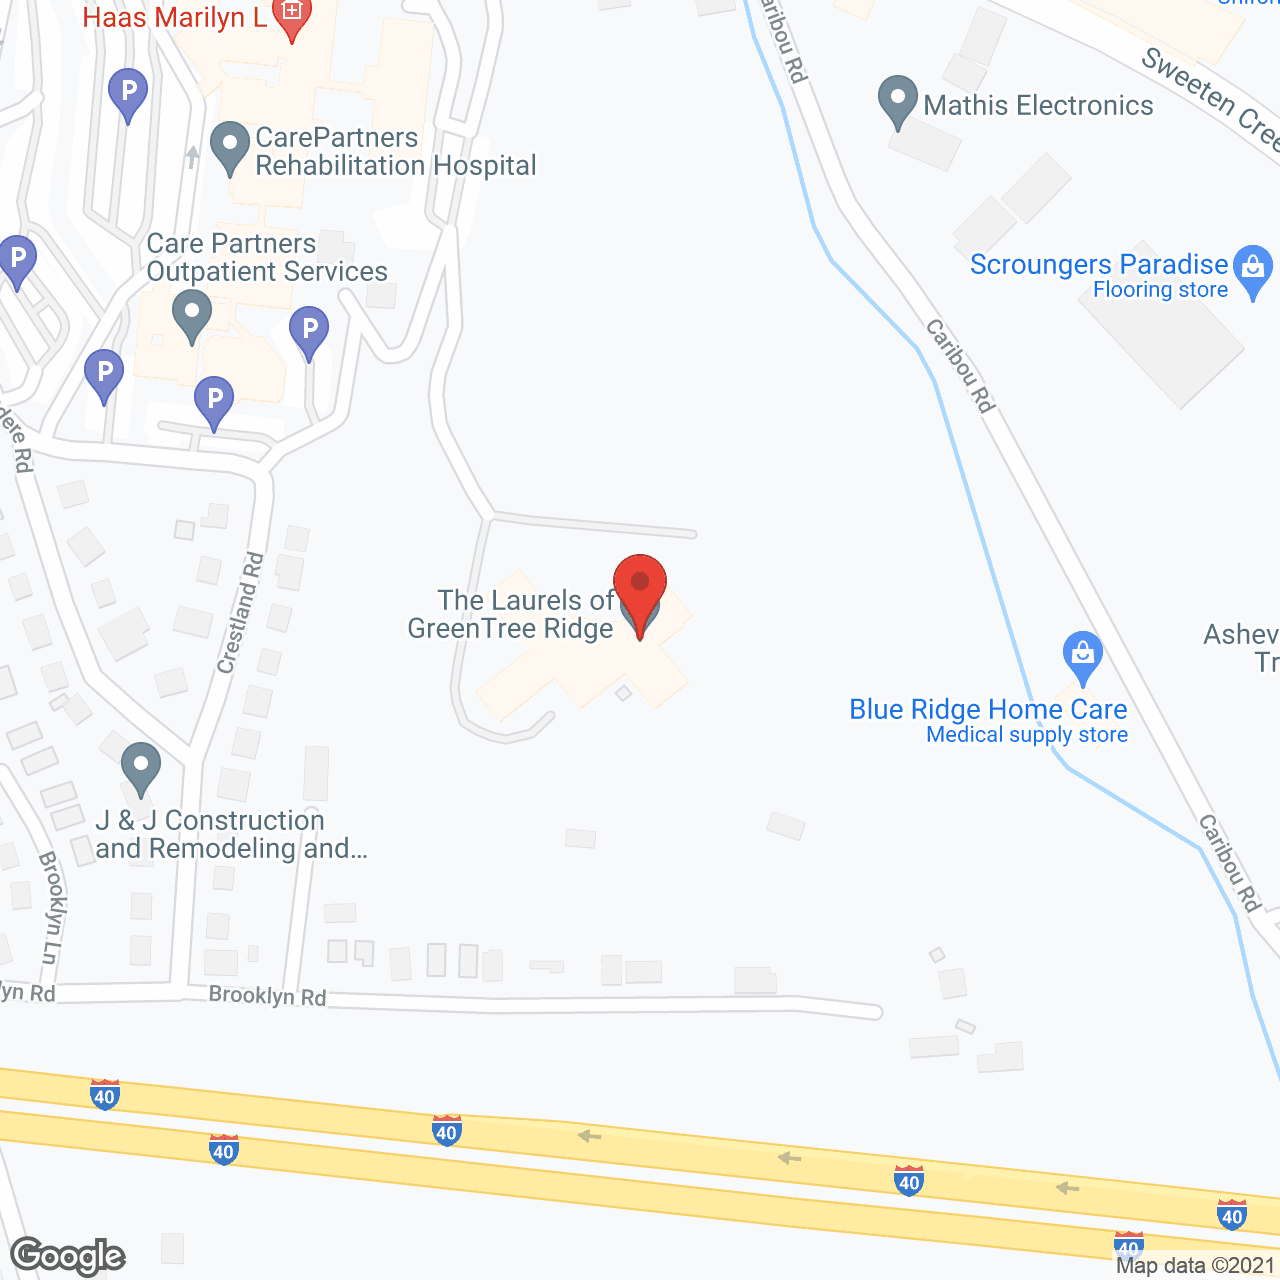 The Laurels of Greentree Ridge in google map